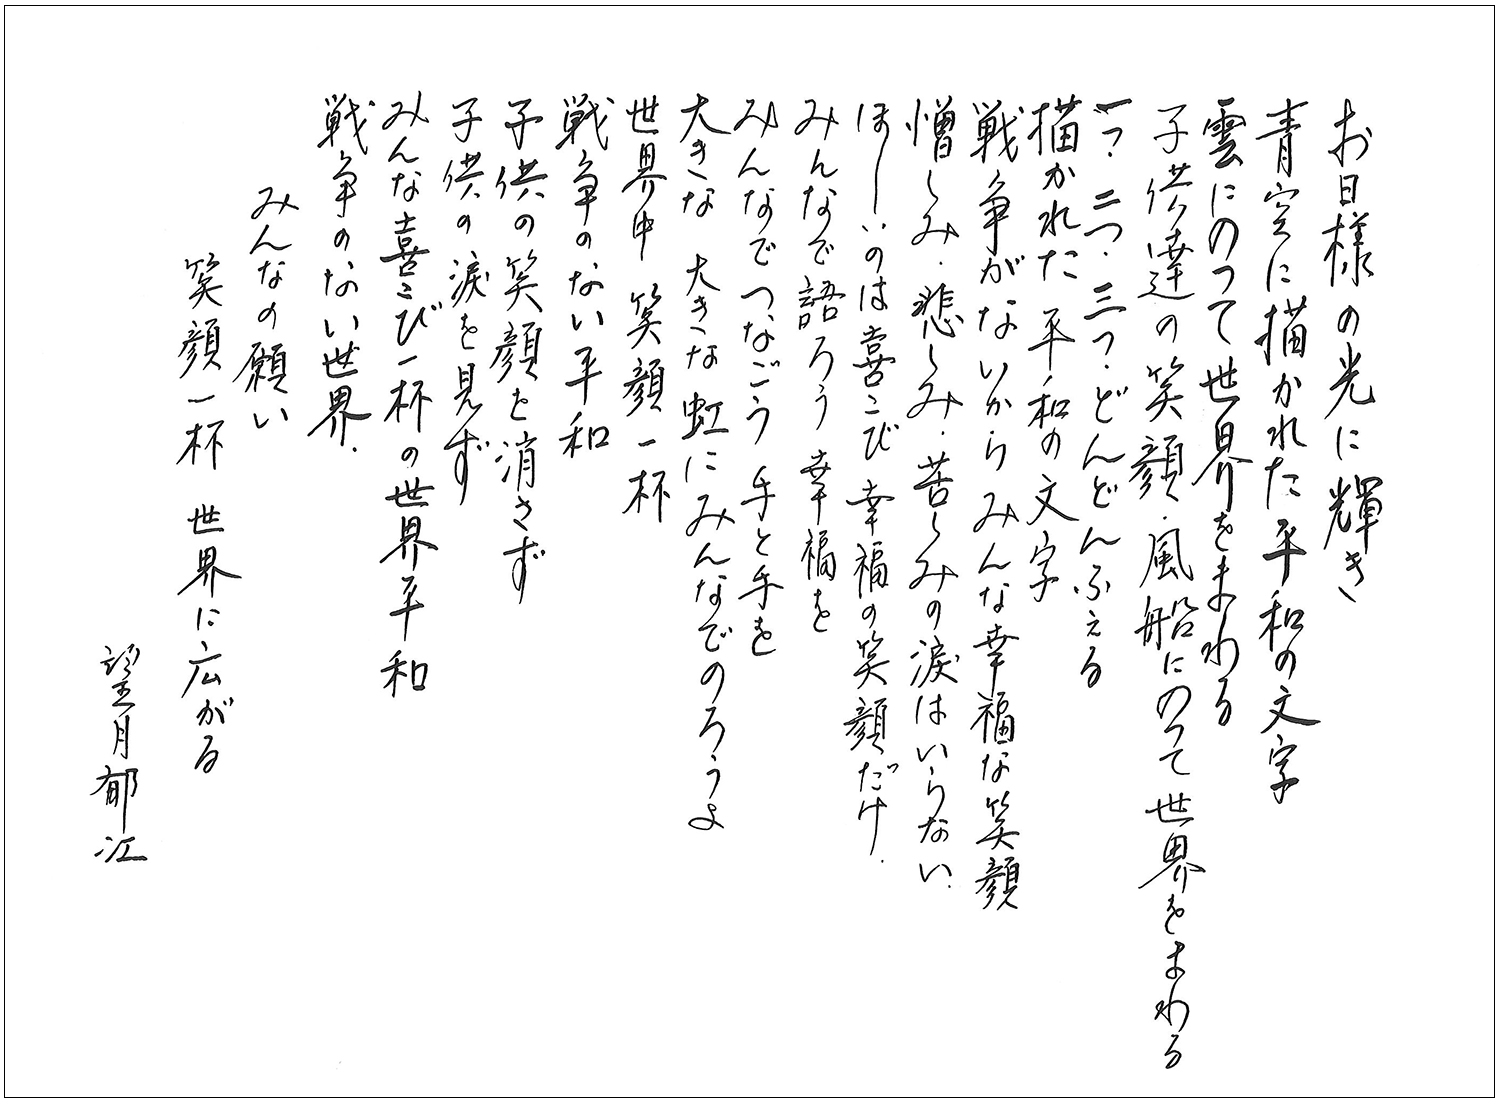 平和への思い、本と歌に込めて。静岡市立 松野小の児童が歌い継ぐ『空に願いを』